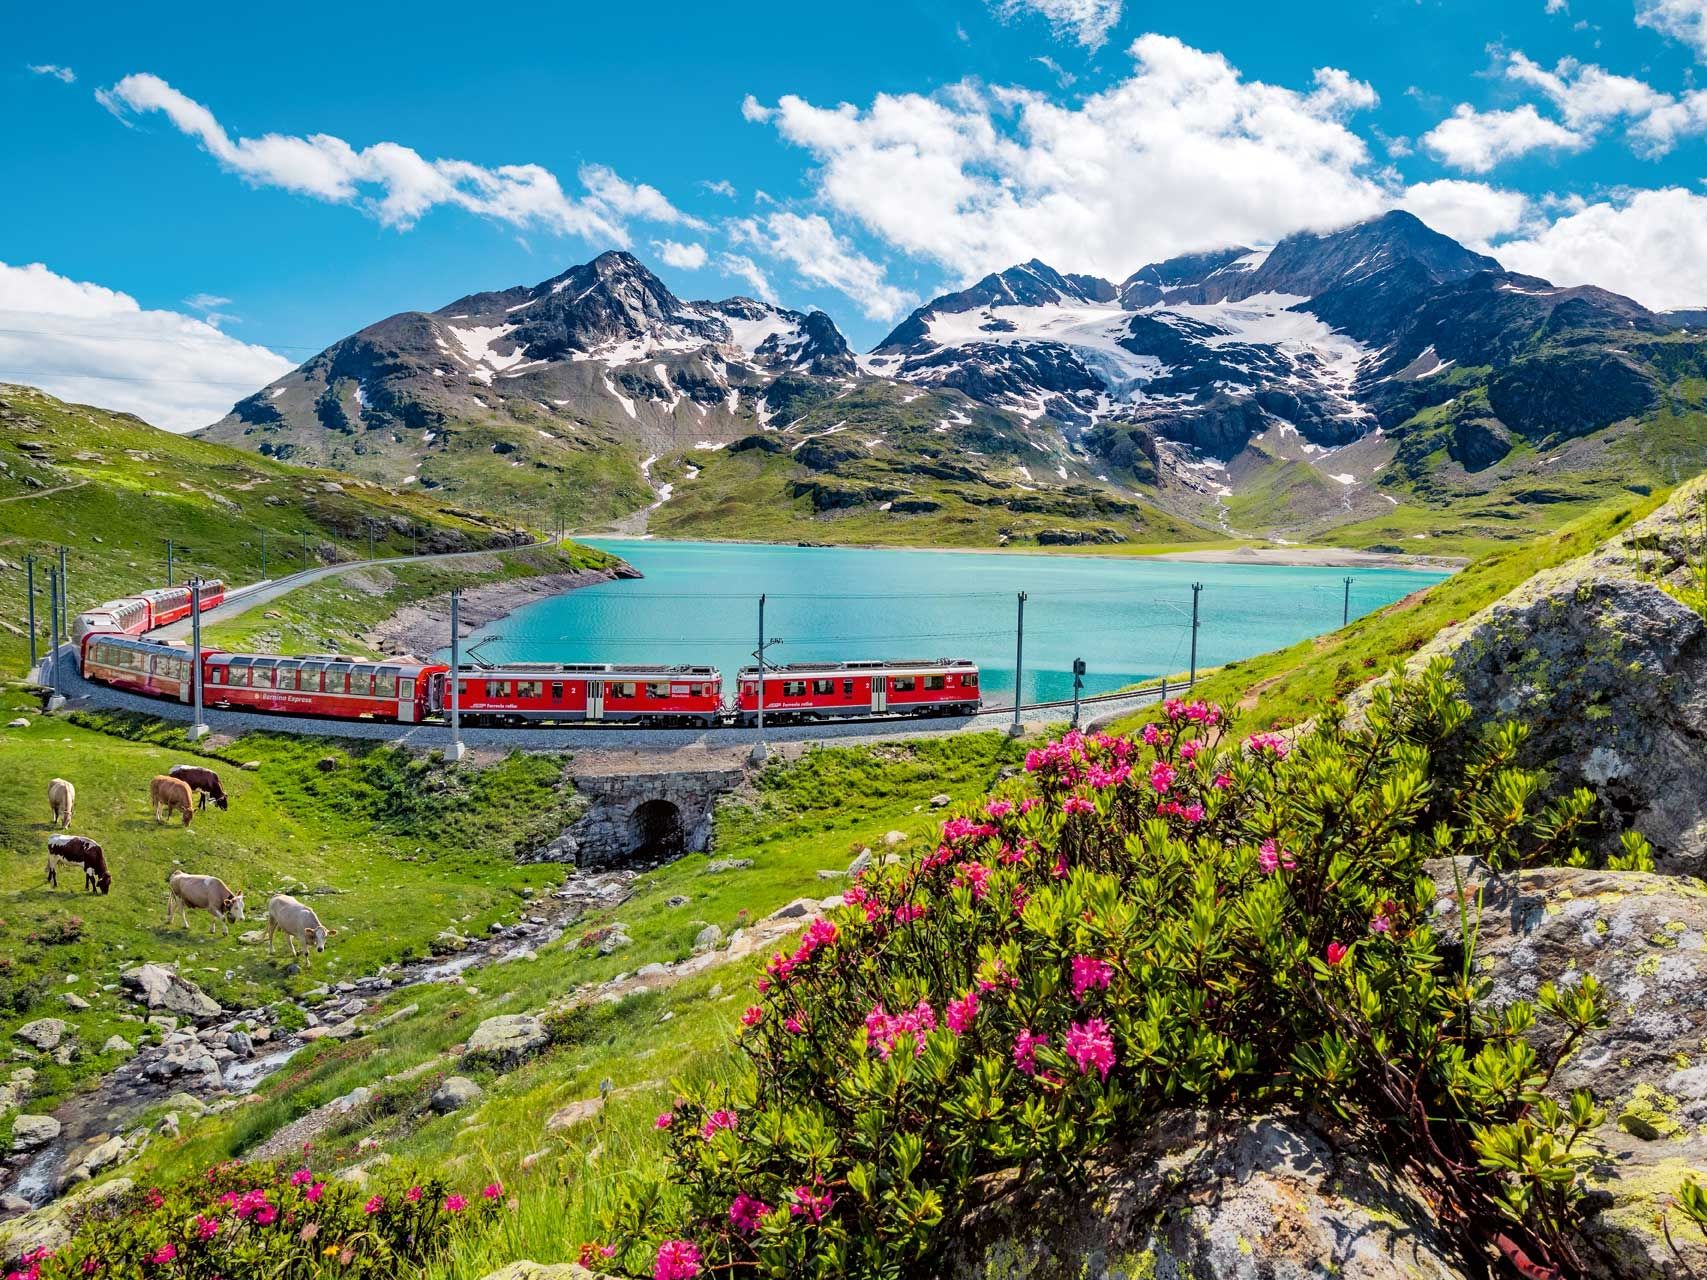 The Top Ten Tourist Attractions in Switzerland